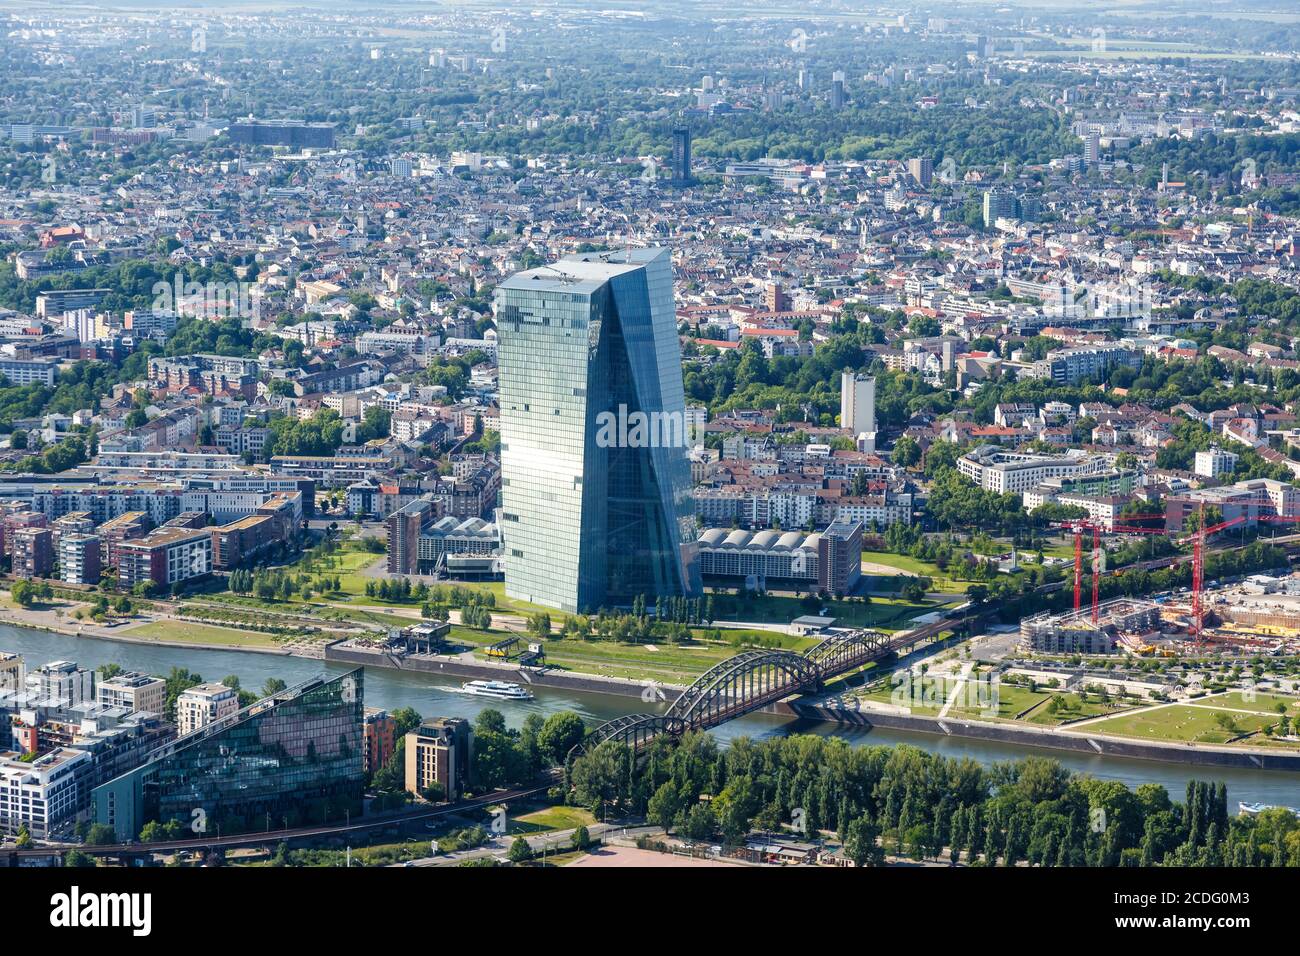 Frankfurt, Deutschland - 27. Mai 2020: EZB European Central Bank Wolkenkratzer Skyline Luftbild Stadt in Deutschland. Stockfoto